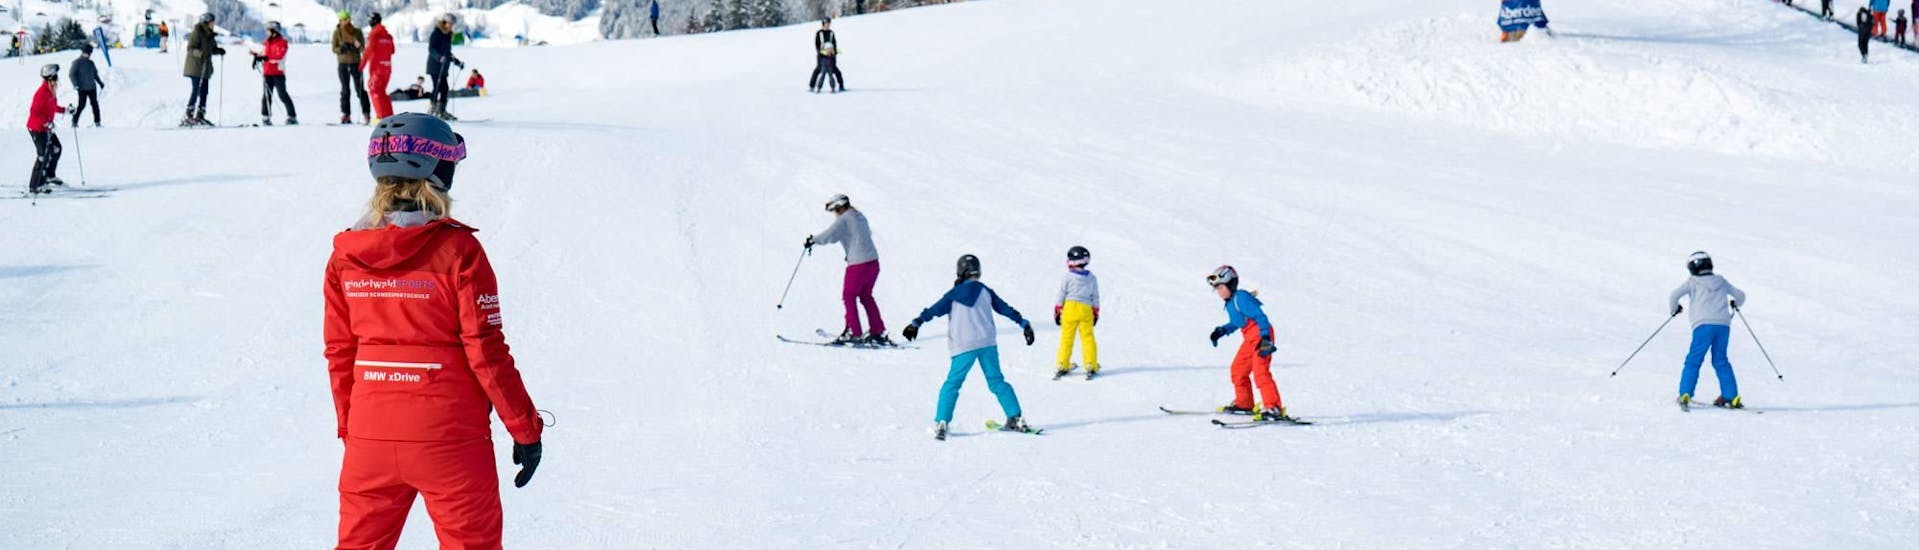 Clases de esquí privadas para niños a partir de 5 años para debutantes.